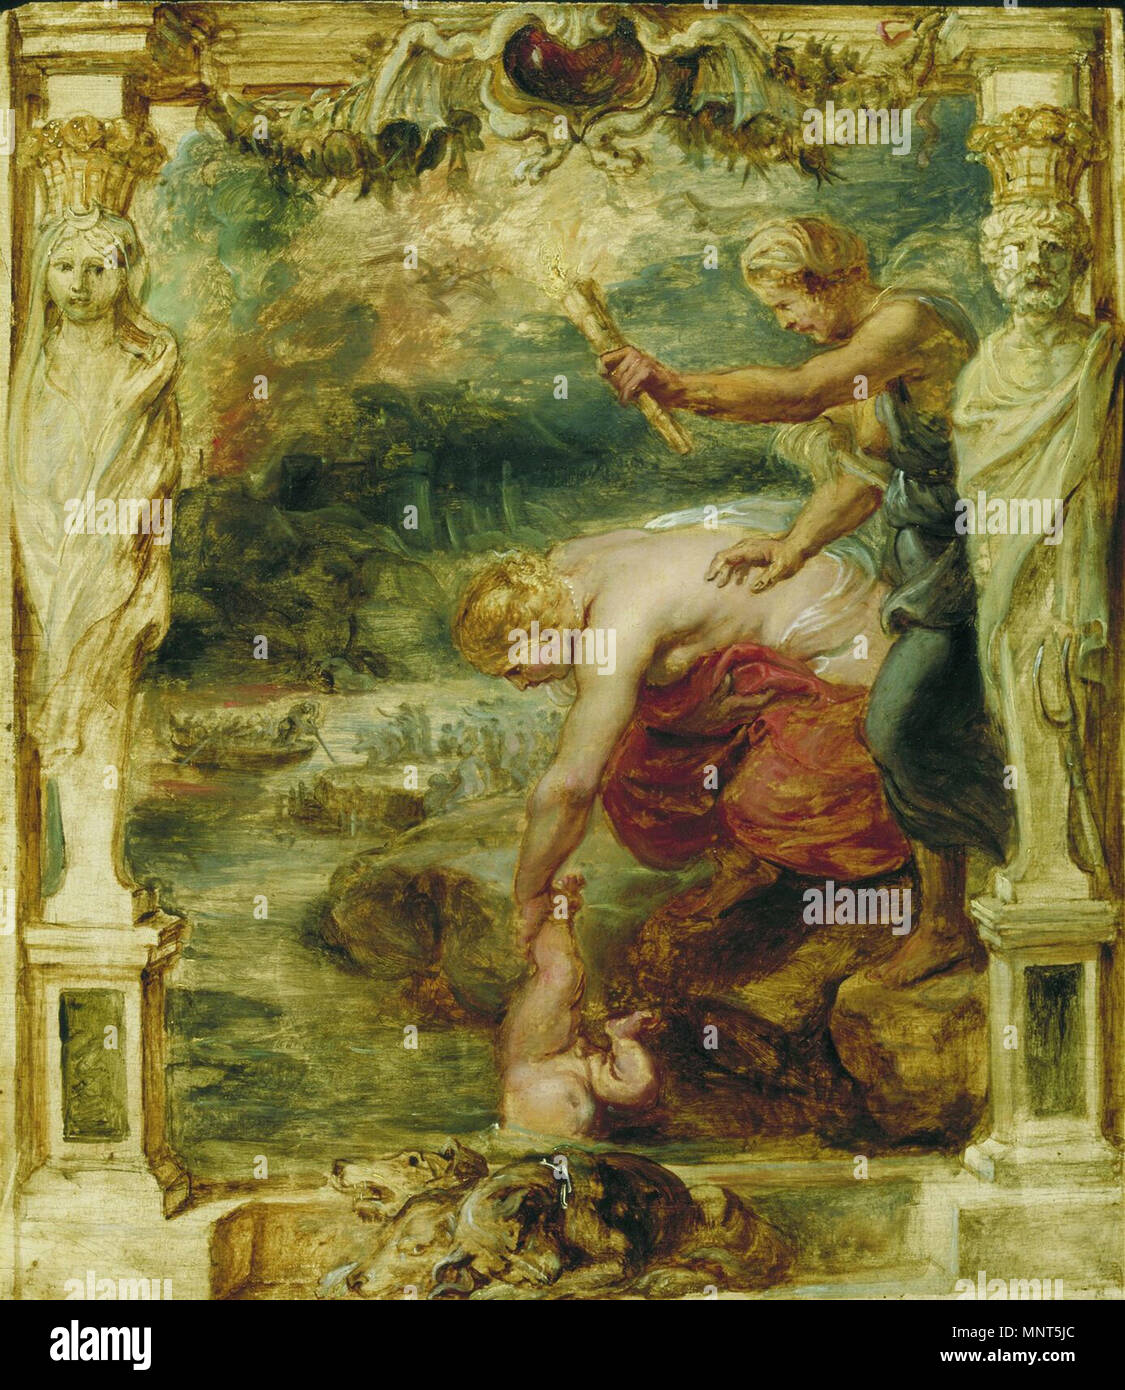 Thétis trempant Achille dans l'enfant de la rivière Styx.[1] TITRE ALTERNATIF(s) : Thétis dips Achille dans le Styx. La déesse Thétis trempant Achille dans l'enfant le Styx, qui traverse l'Hadès. Dans l'arrière-plan, le passeur Charon peut être vu en tenant les morts de l'autre côté de la rivière dans son bateau. La scène a été peinte par Peter Paul Rubens autour de 1630/1635 dans le cadre de la série d'achille . Entre 1630 et 1635. 978 Peter Paul Rubens 181 Banque D'Images